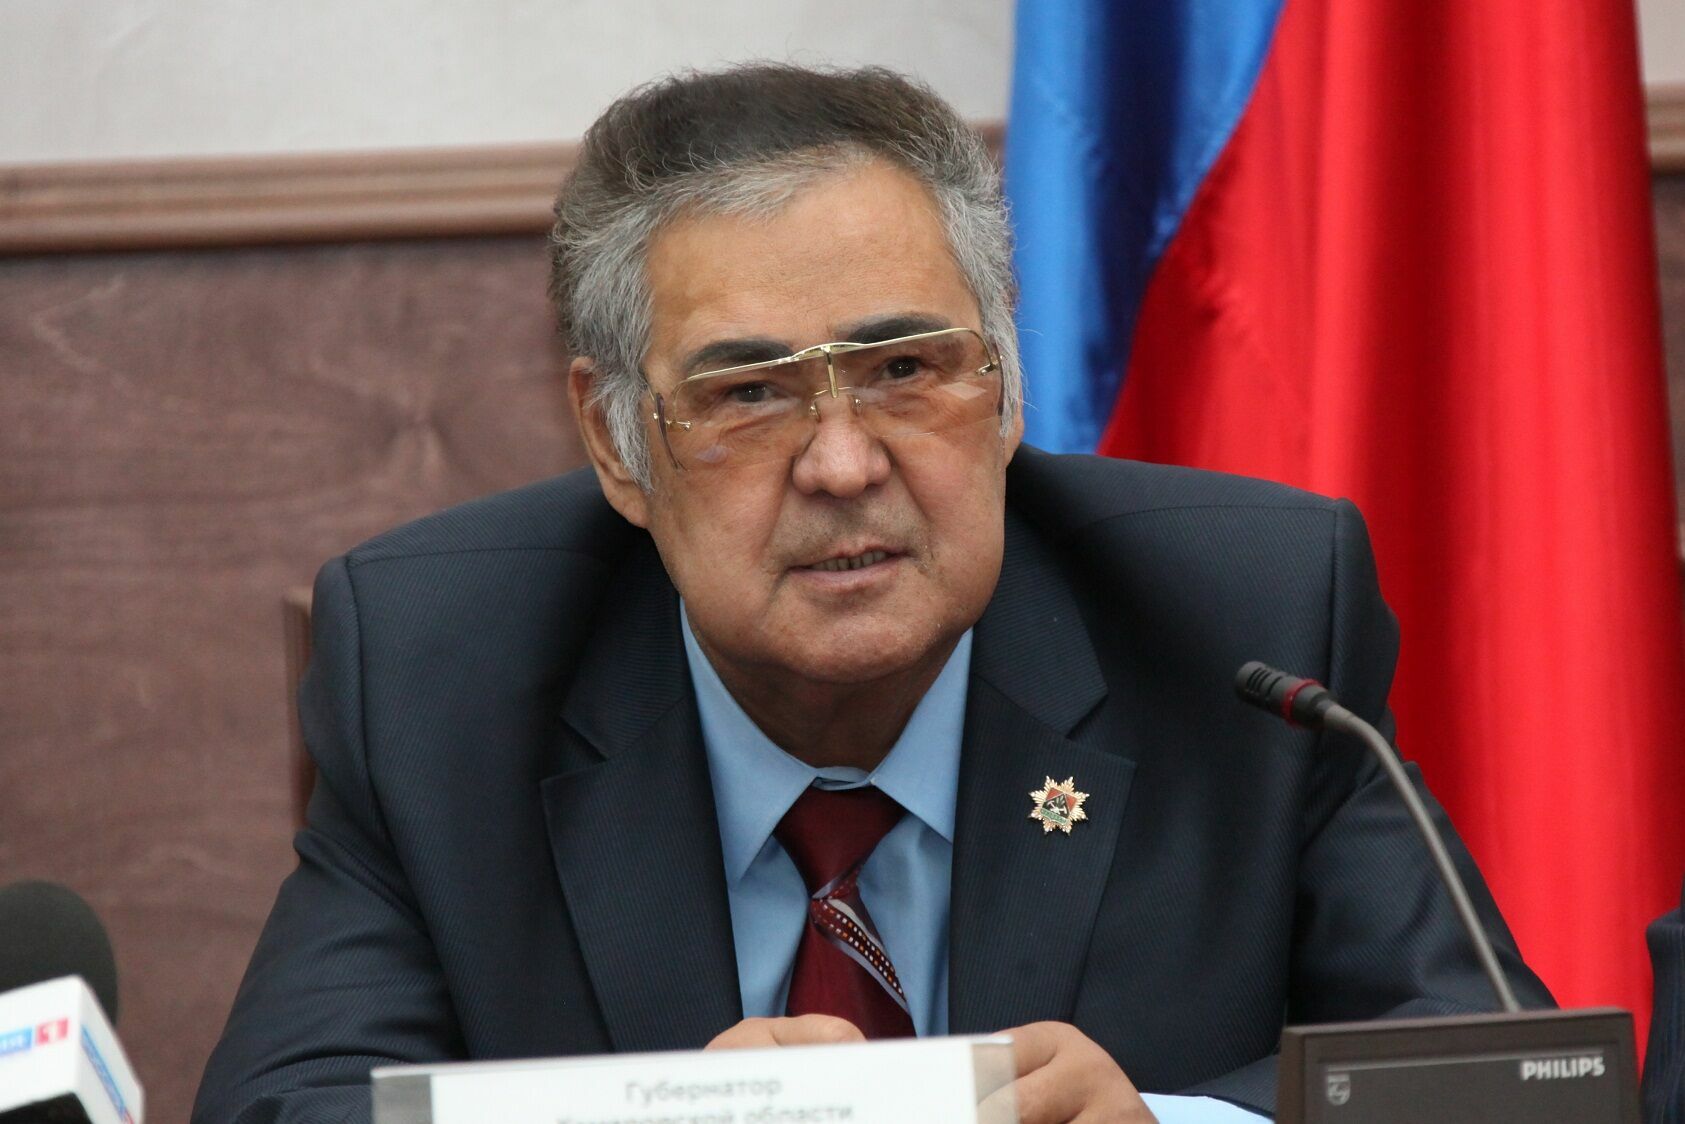 СМИ сообщили дату предполагаемой отставки губернатора Тулеева